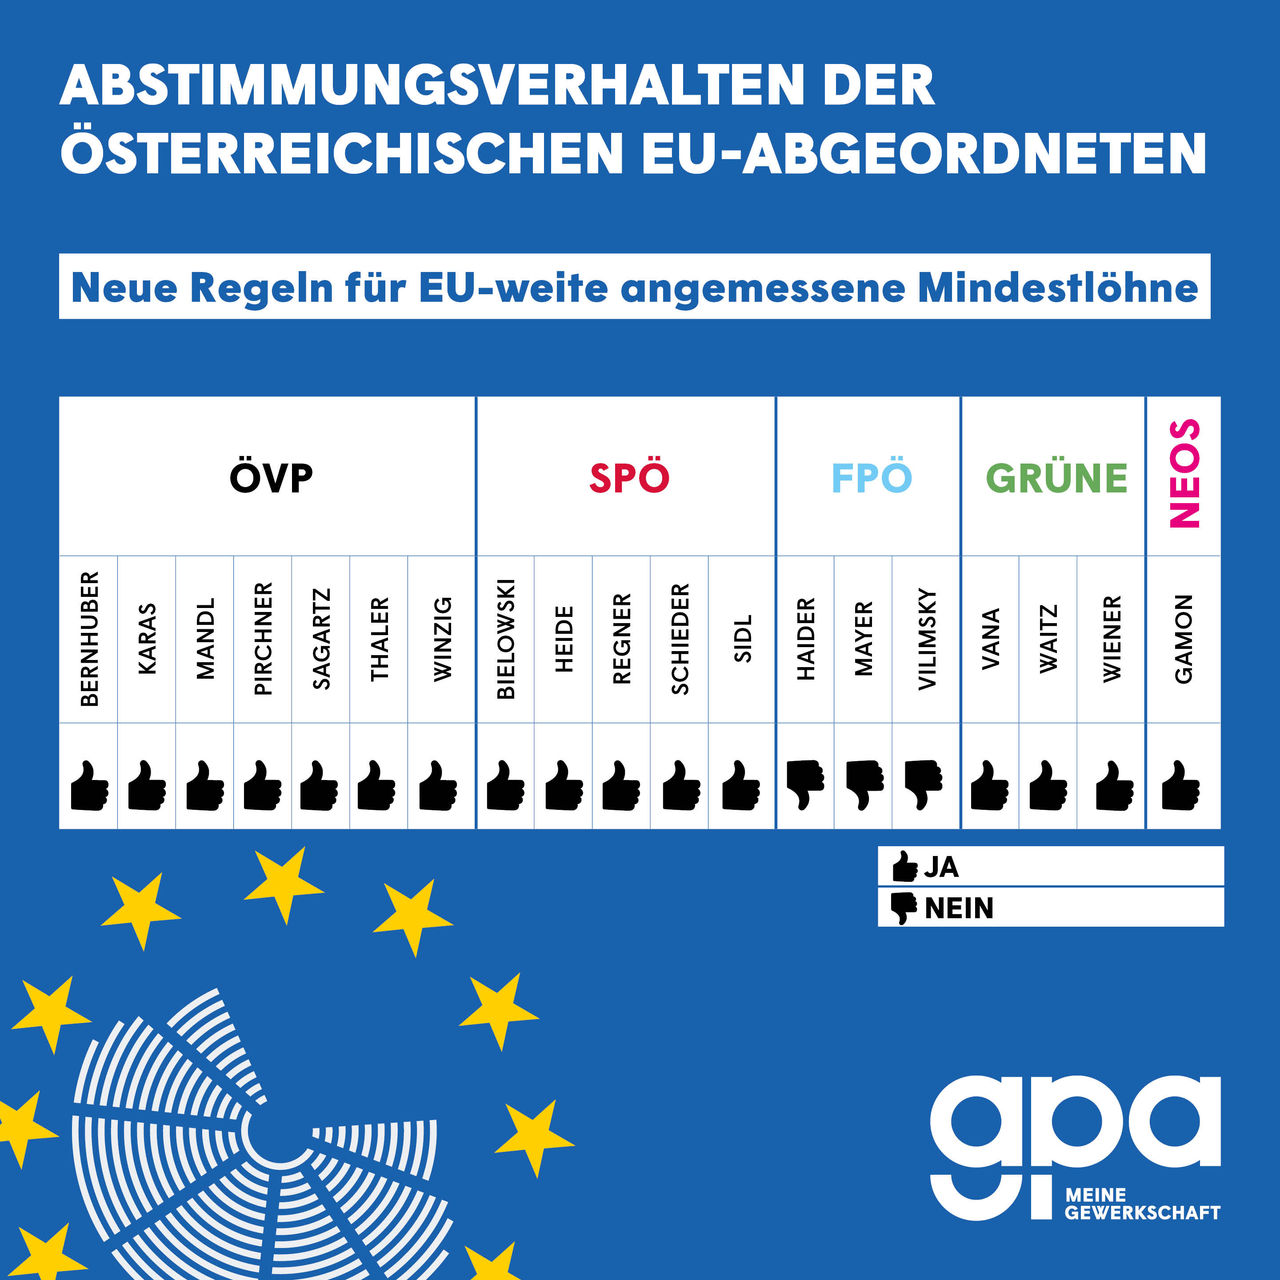 Abstimmungsverhalten der österreichischen EU-Abgeordneten